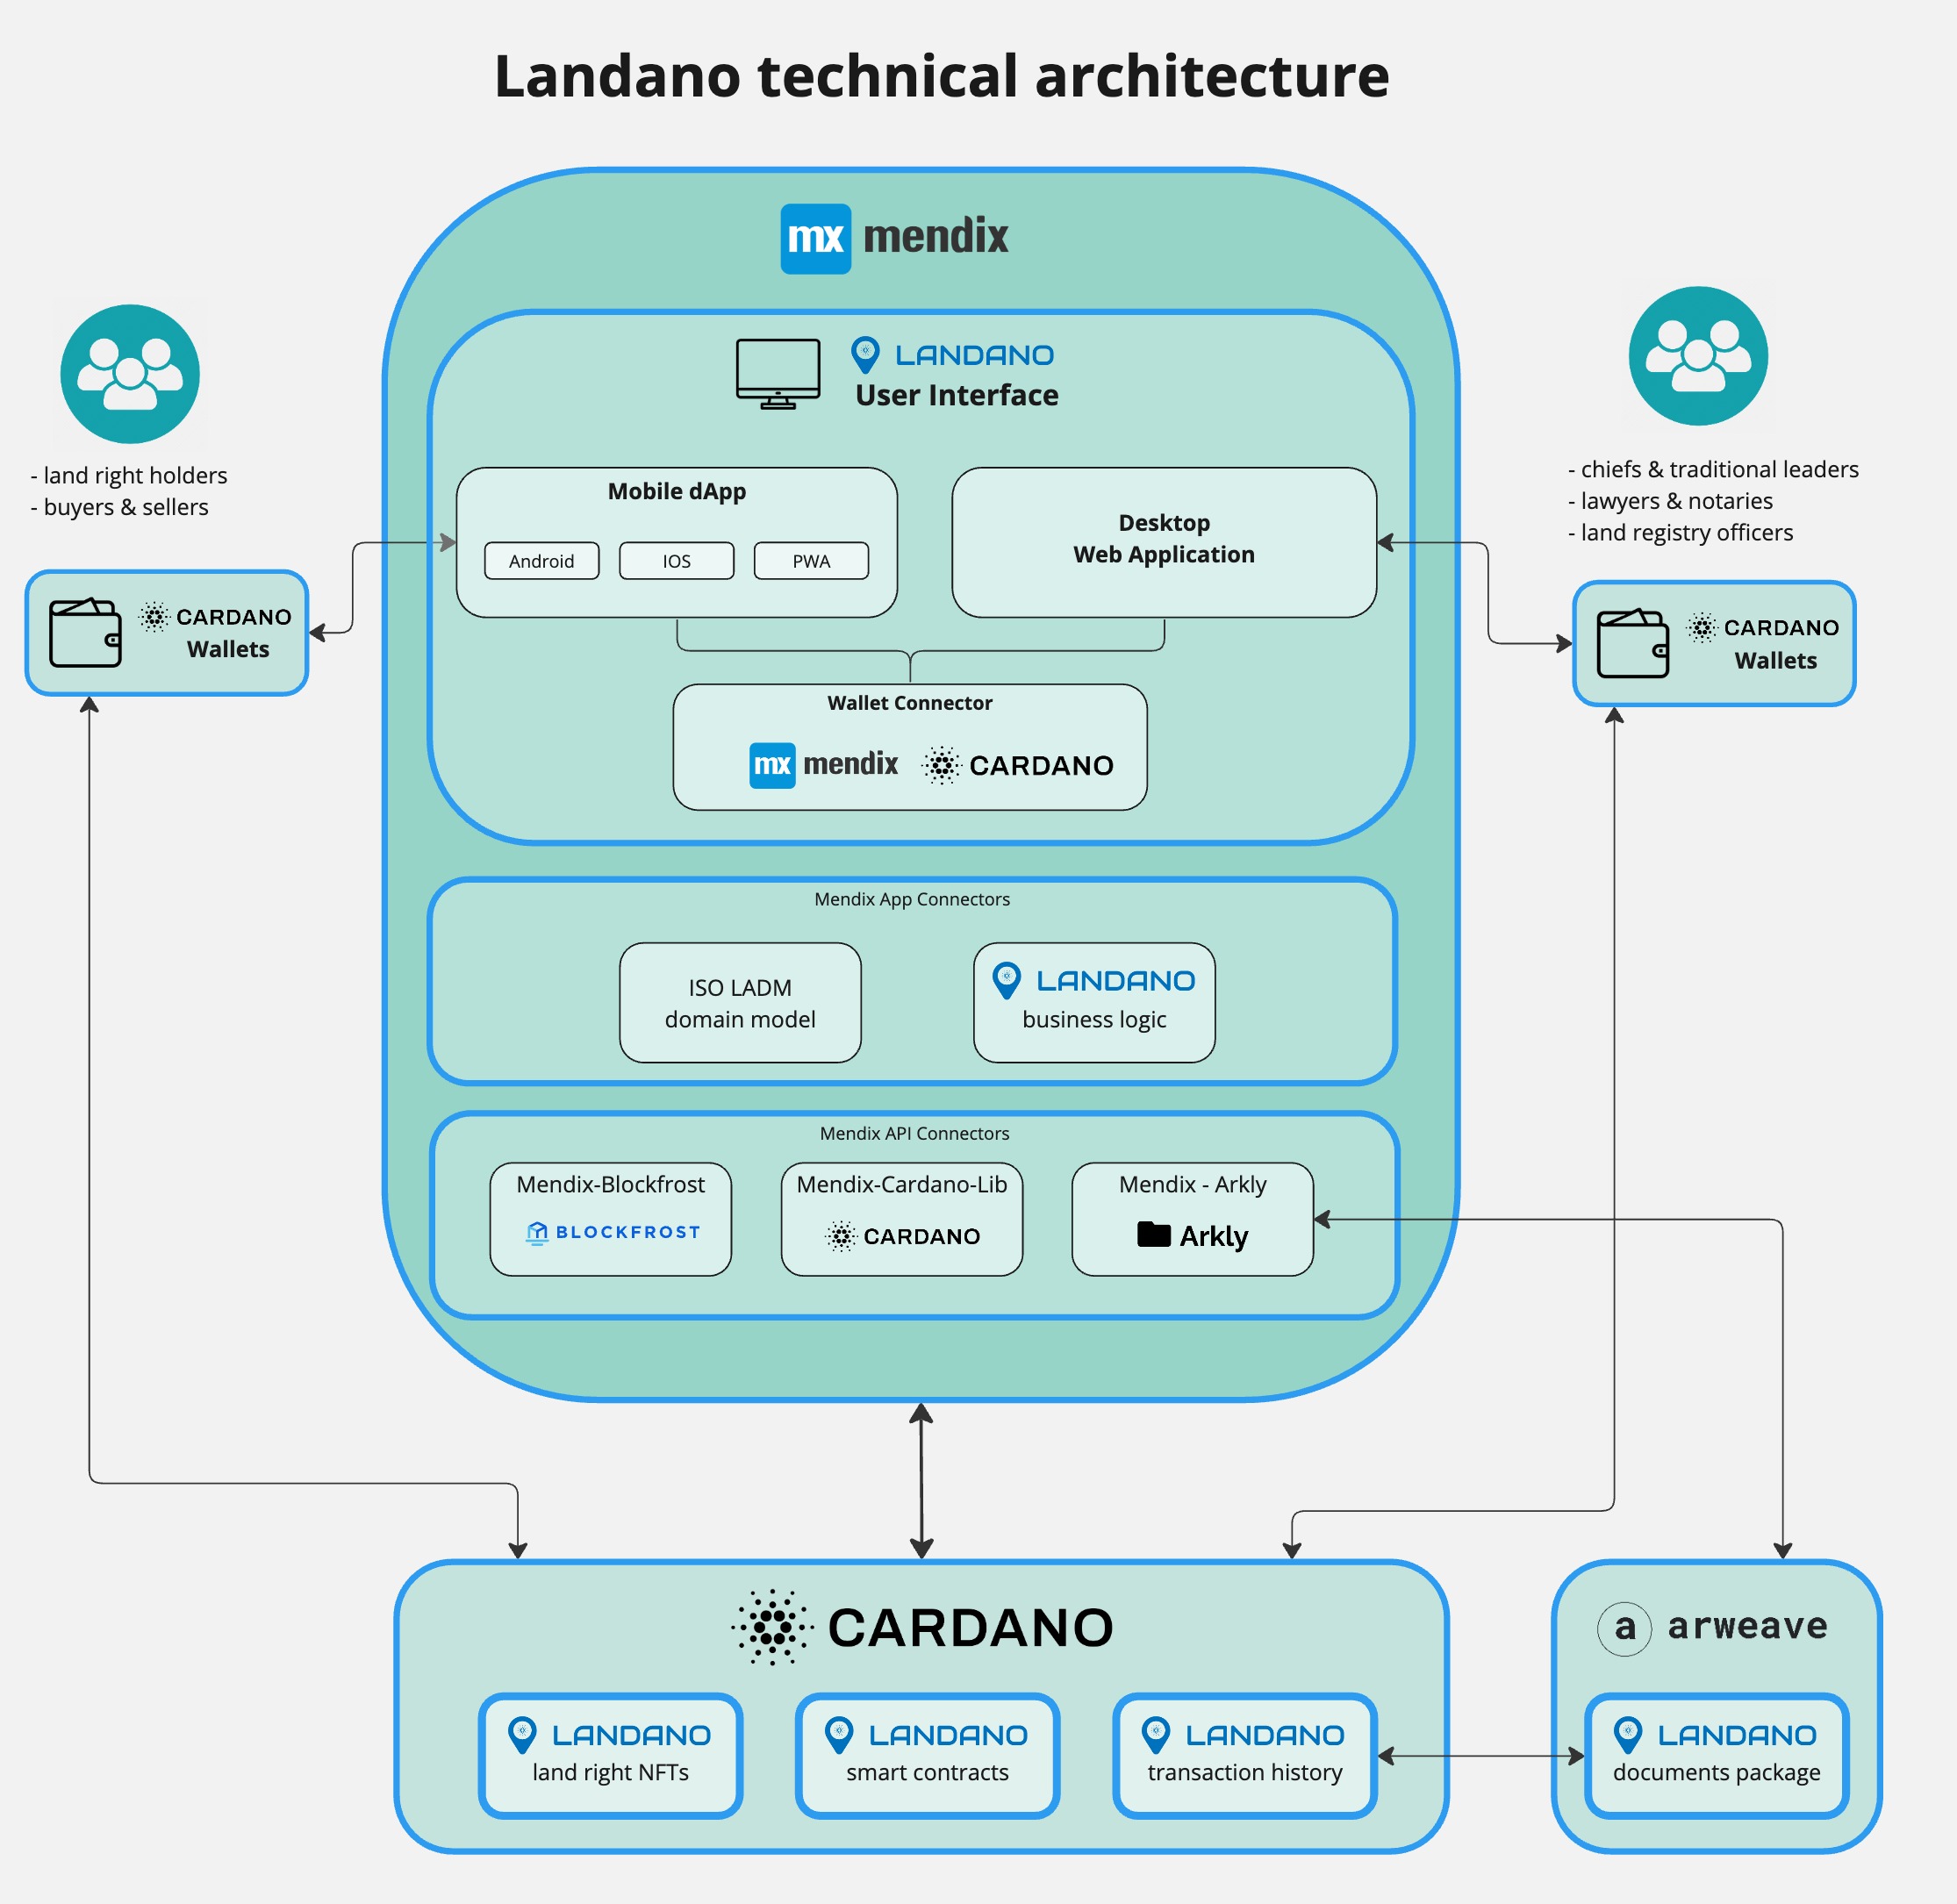 The Landano technical architecture v1